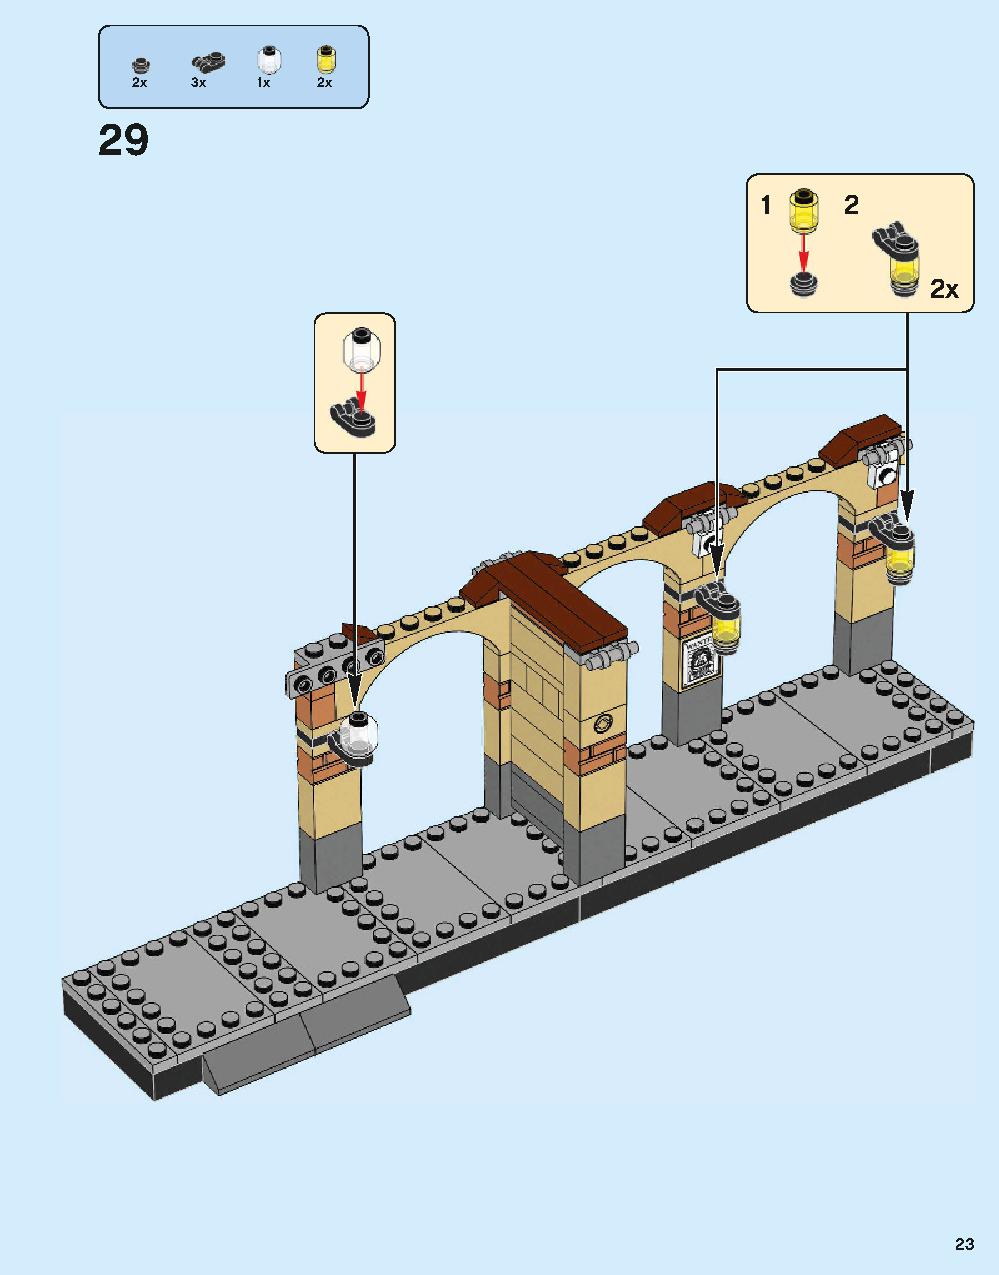 ホグワーツ特急 75955 レゴの商品情報 レゴの説明書・組立方法 23 page